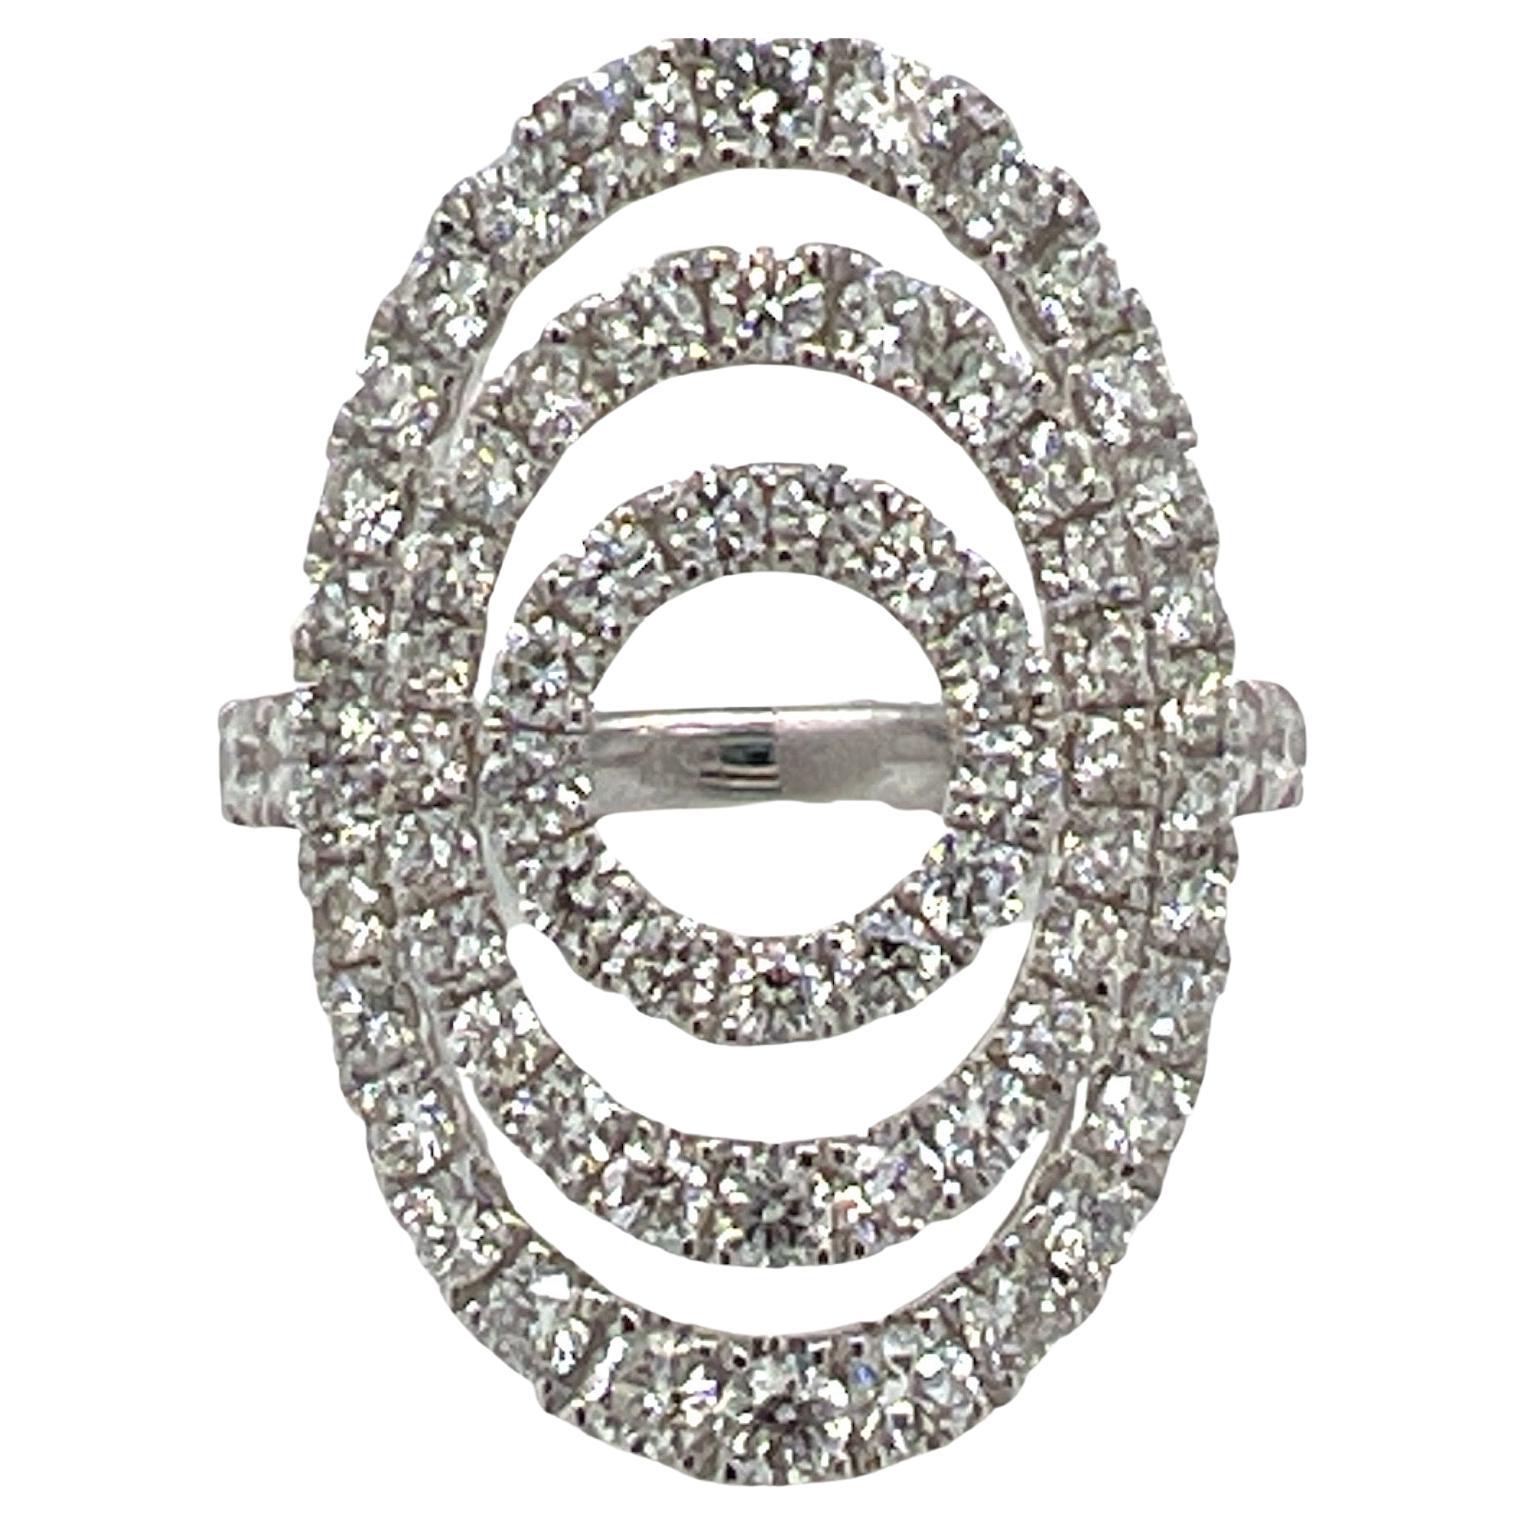 2.00 CTW Diamond 18 Karat White Gold Modern Open Circle Cocktail Ring 